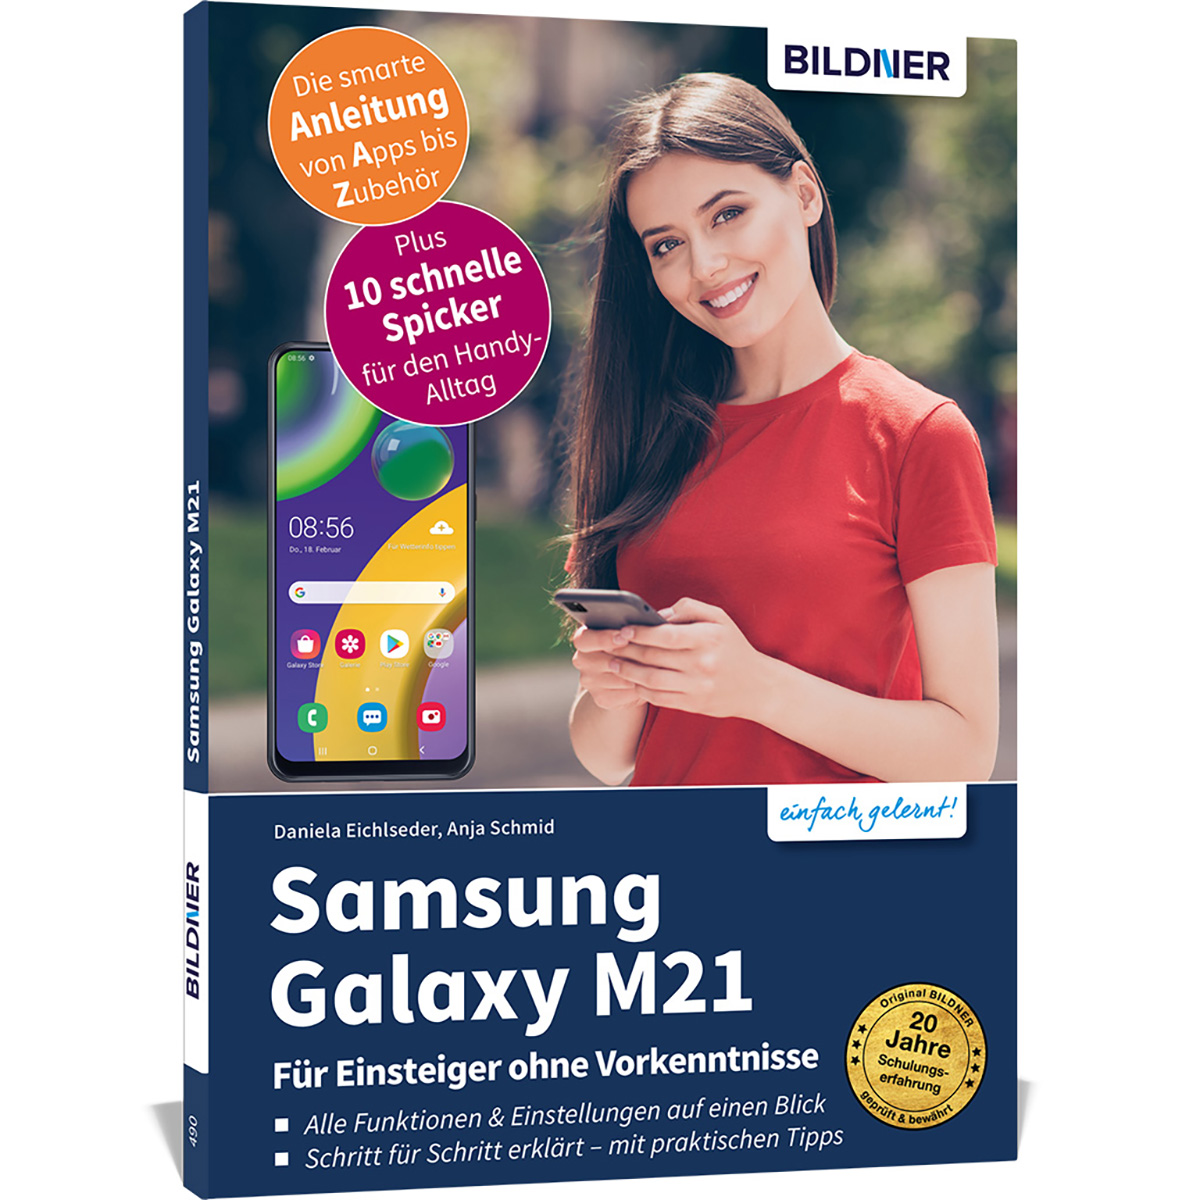 Samsung Galaxy M21 - Einsteiger Für ohne Vorkenntnisse